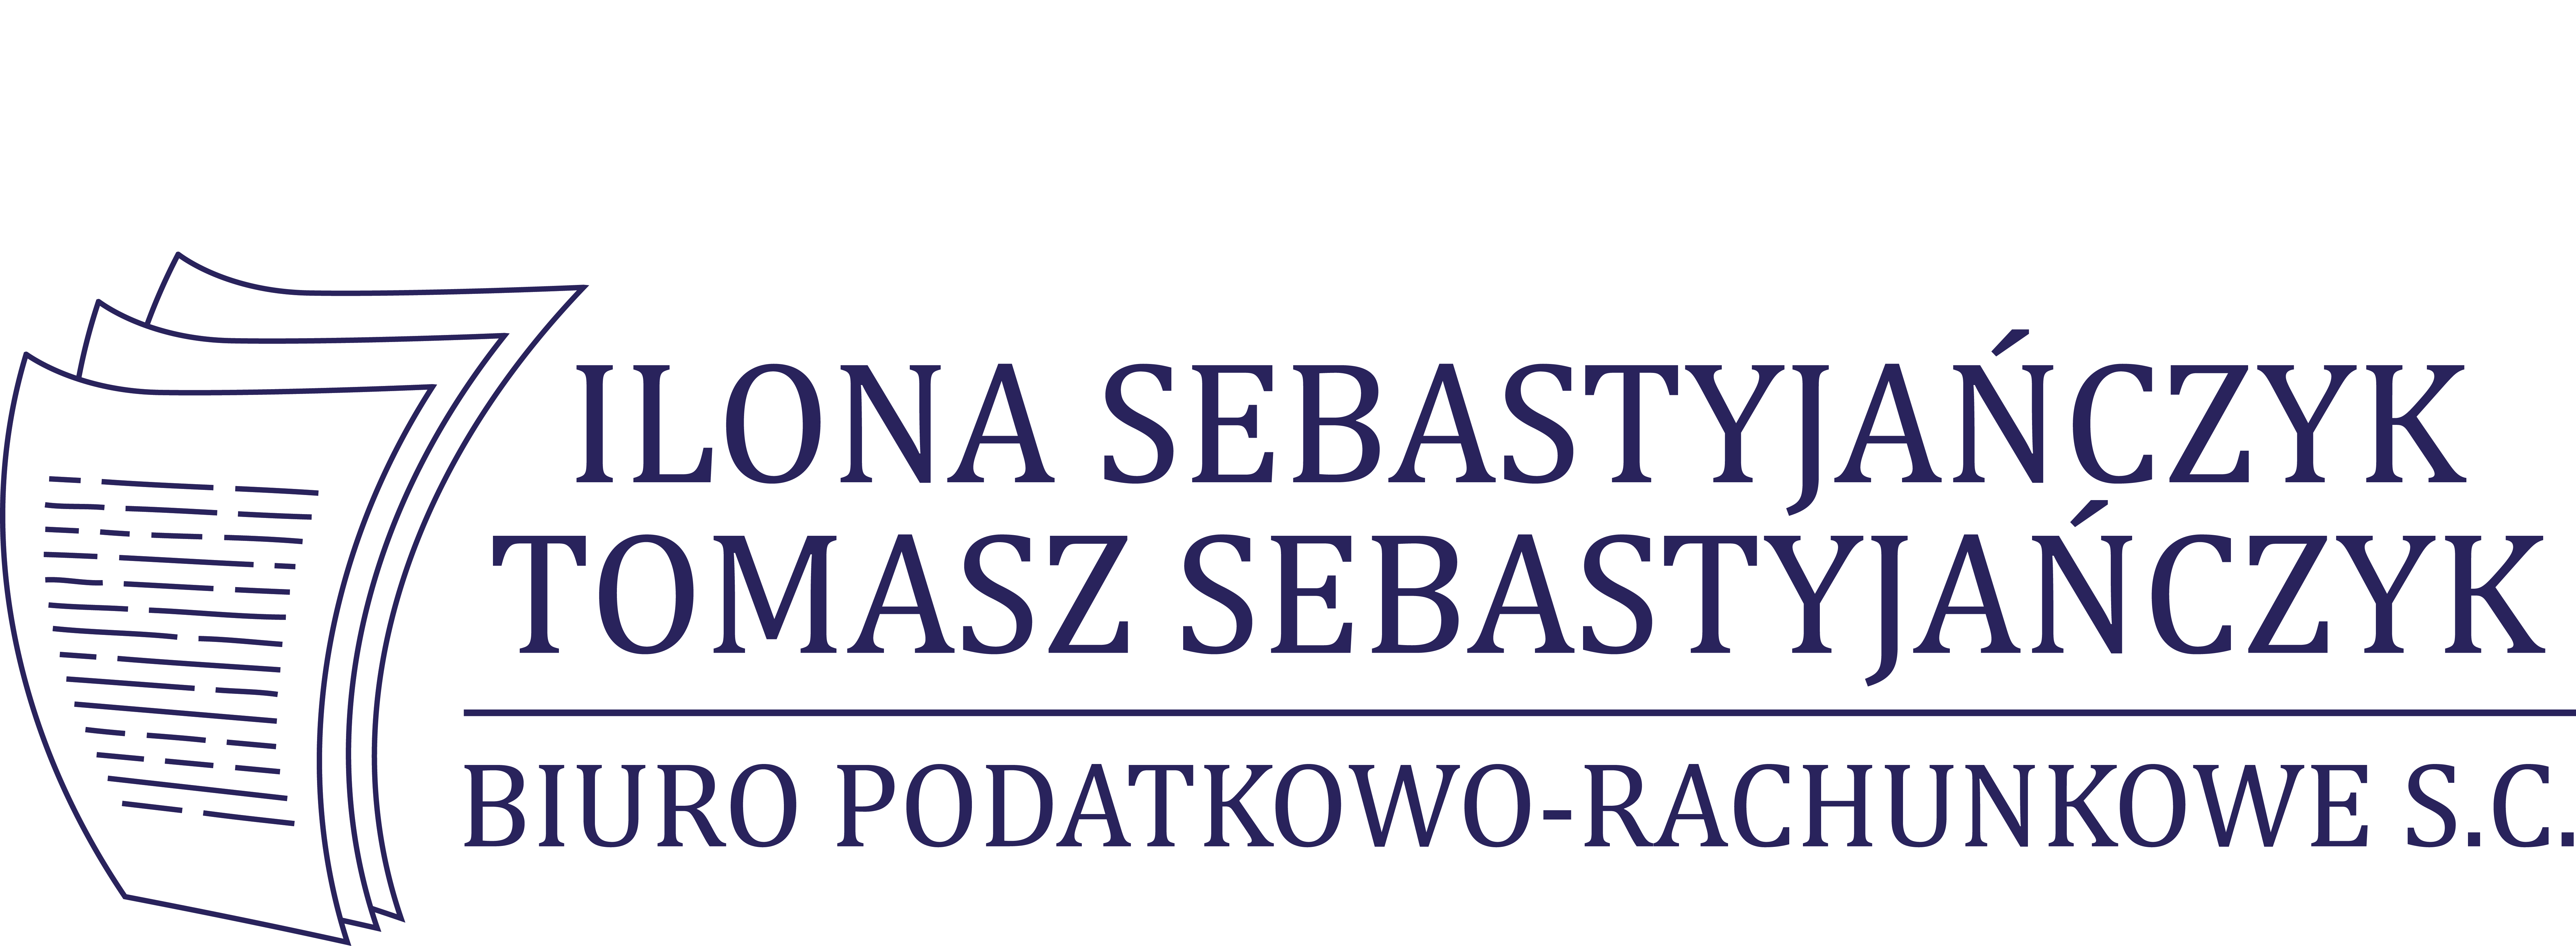 Biuro Podatkowo-Rachunkowe S.C. Ilona Sebastyjańczyk i Tomasz Sebastyjańczyk